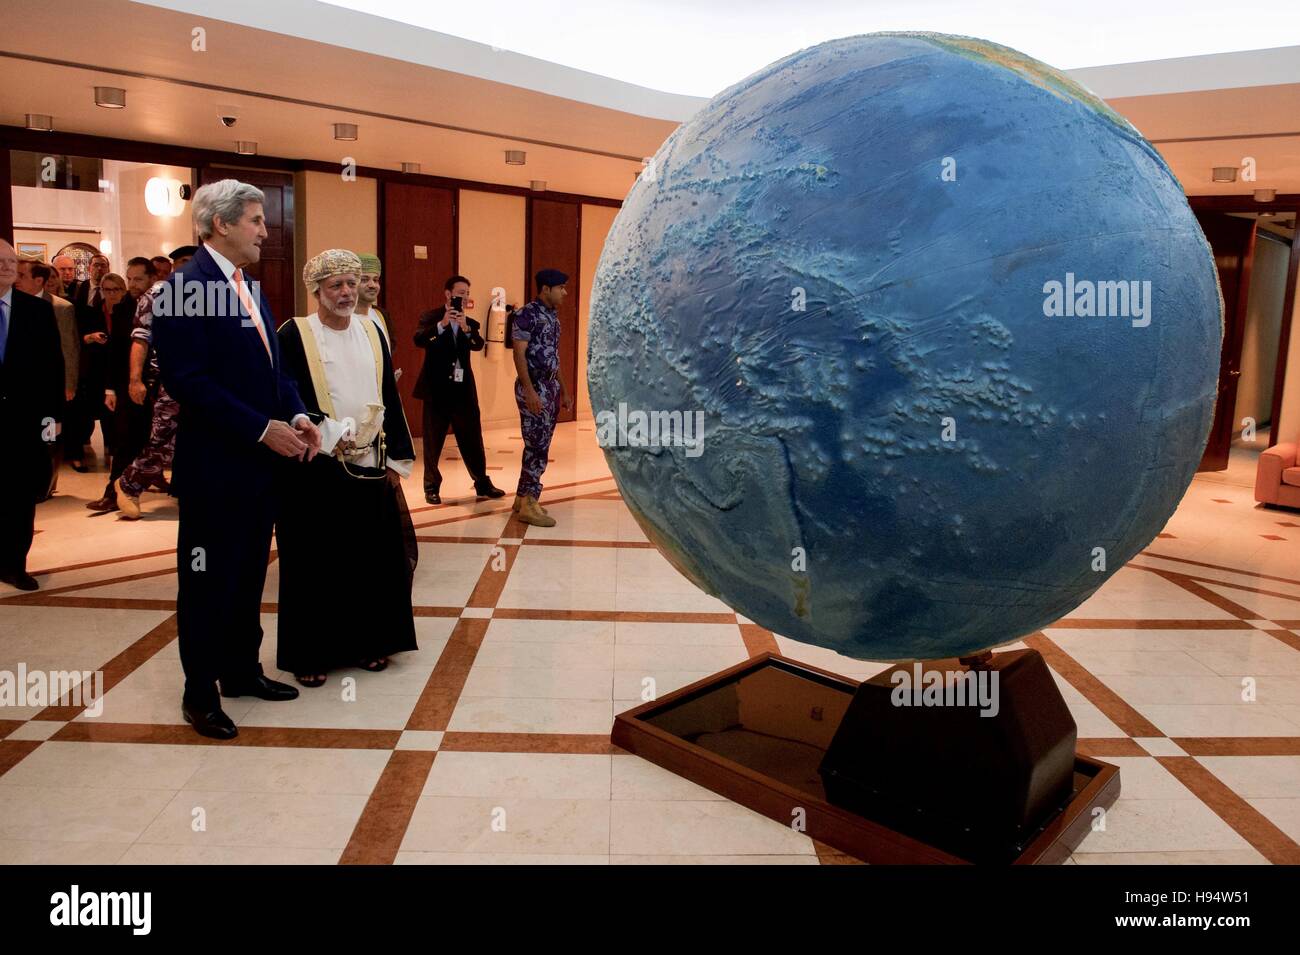 Le secrétaire d'Etat John Kerry et le ministre des Affaires étrangères omanais Yusuf bin Alawi regardez un globe en rotation au ministère des Affaires étrangères le 14 novembre 2016 à Muscat, Oman. Banque D'Images